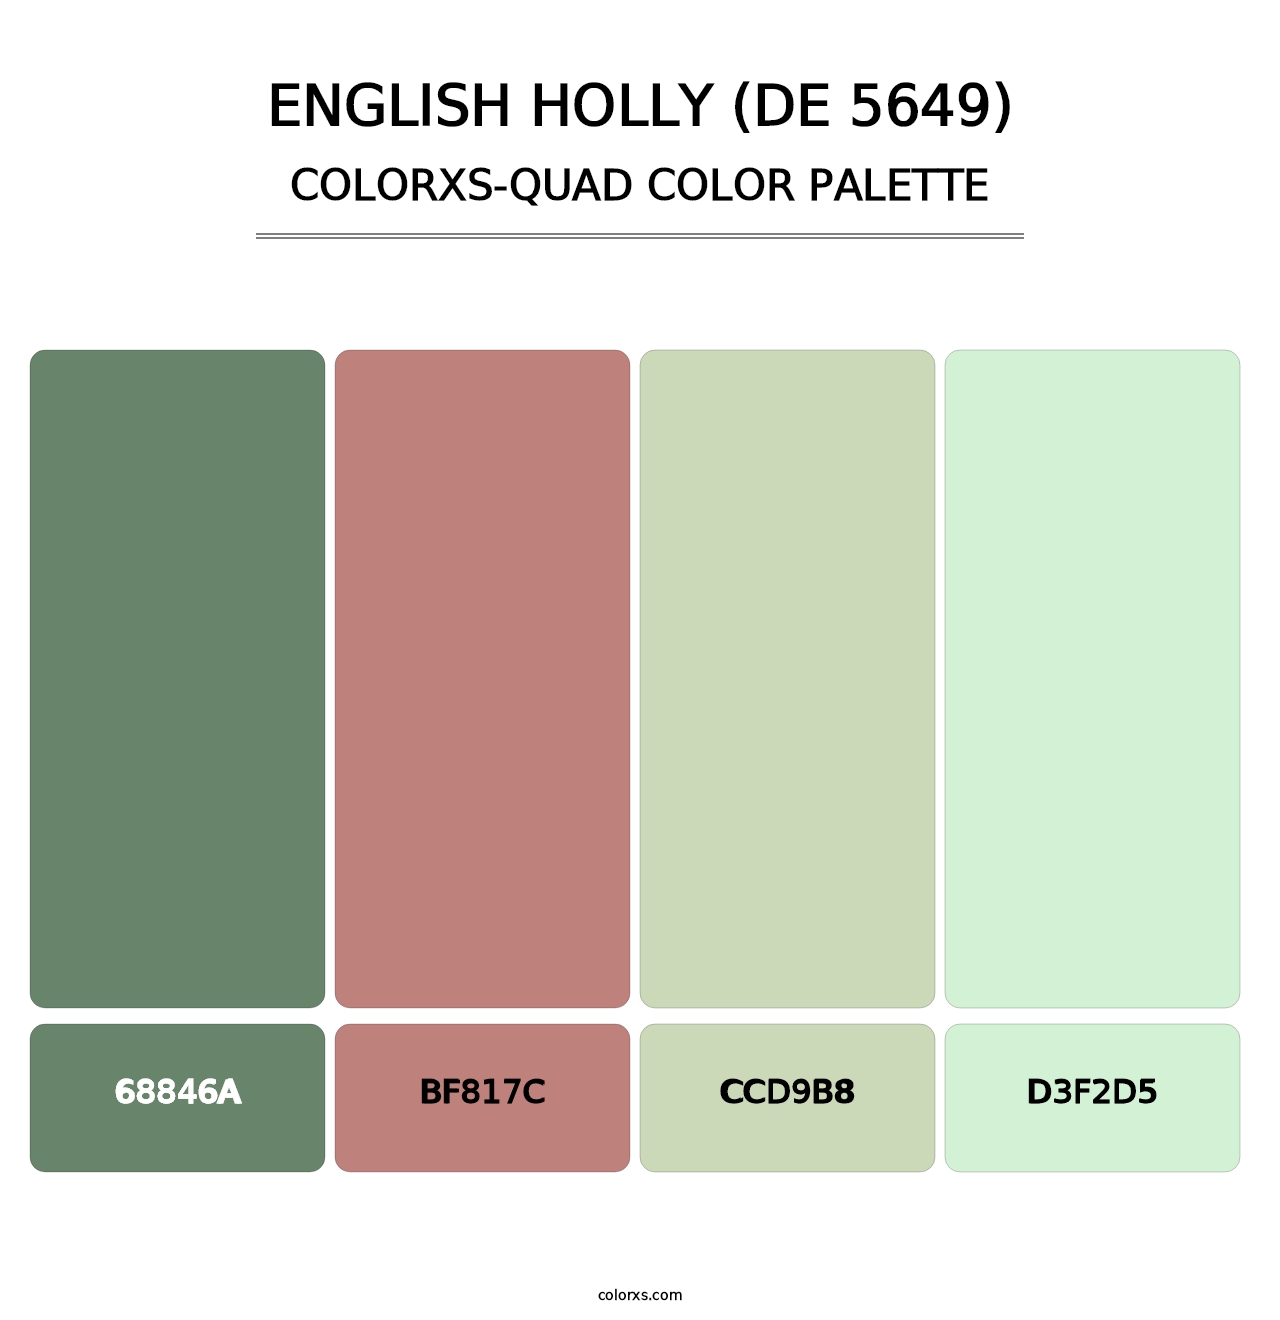 English Holly (DE 5649) - Colorxs Quad Palette